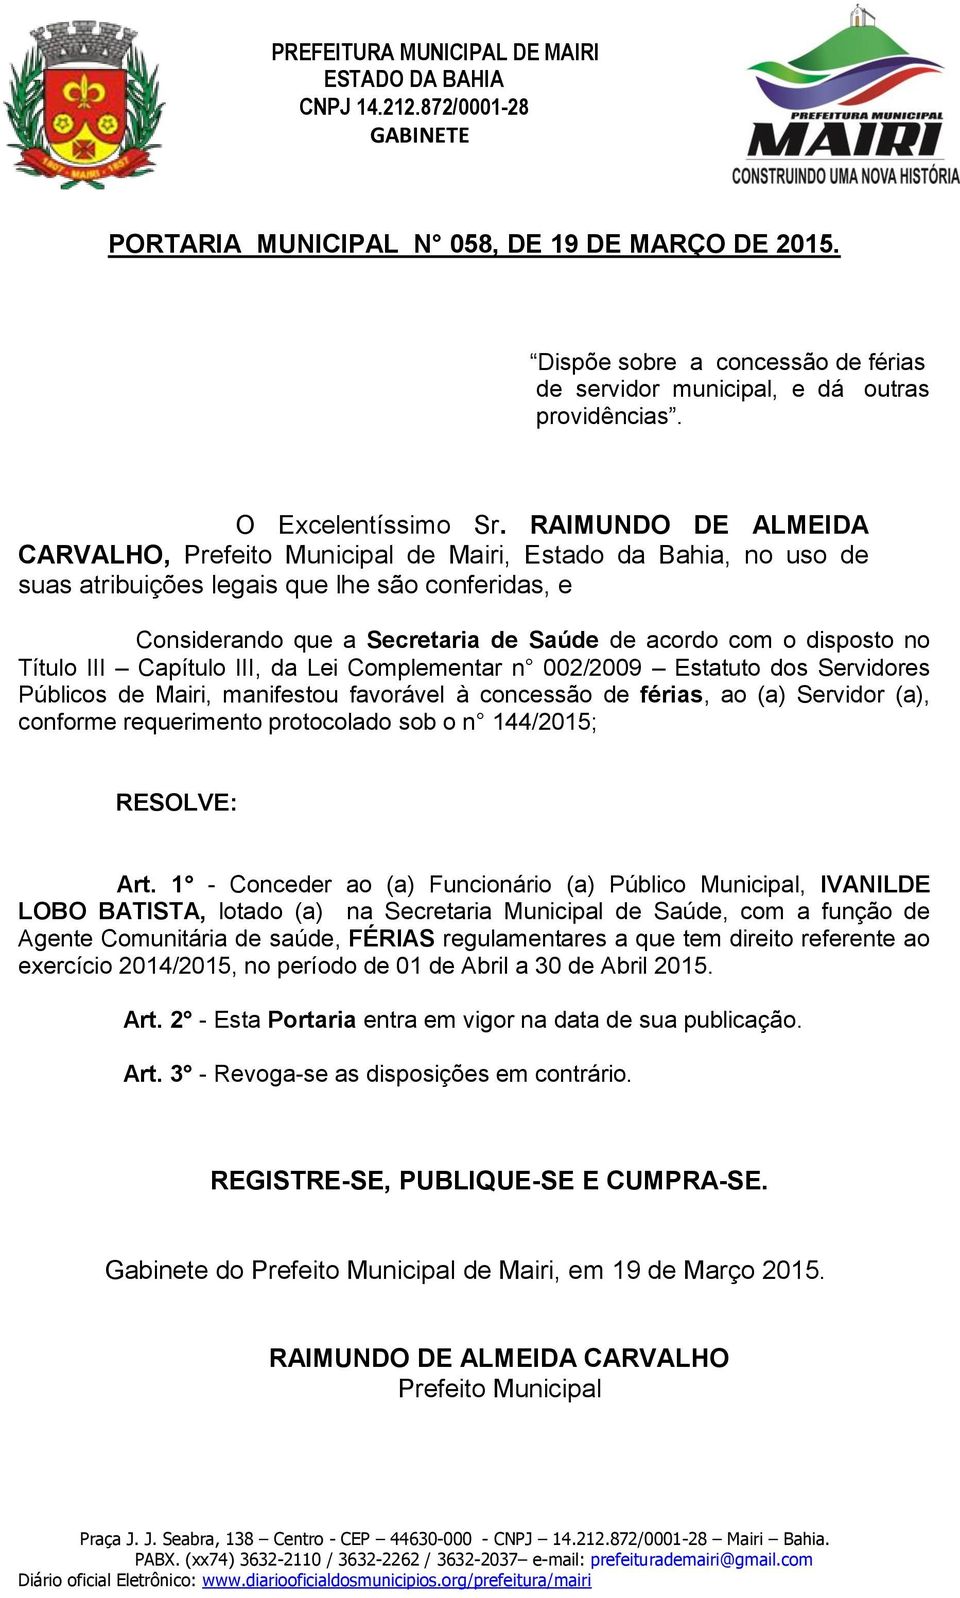 1 - Conceder ao (a) Funcionário (a) Público Municipal, IVANILDE LOBO BATISTA, lotado (a) na Secretaria Municipal de